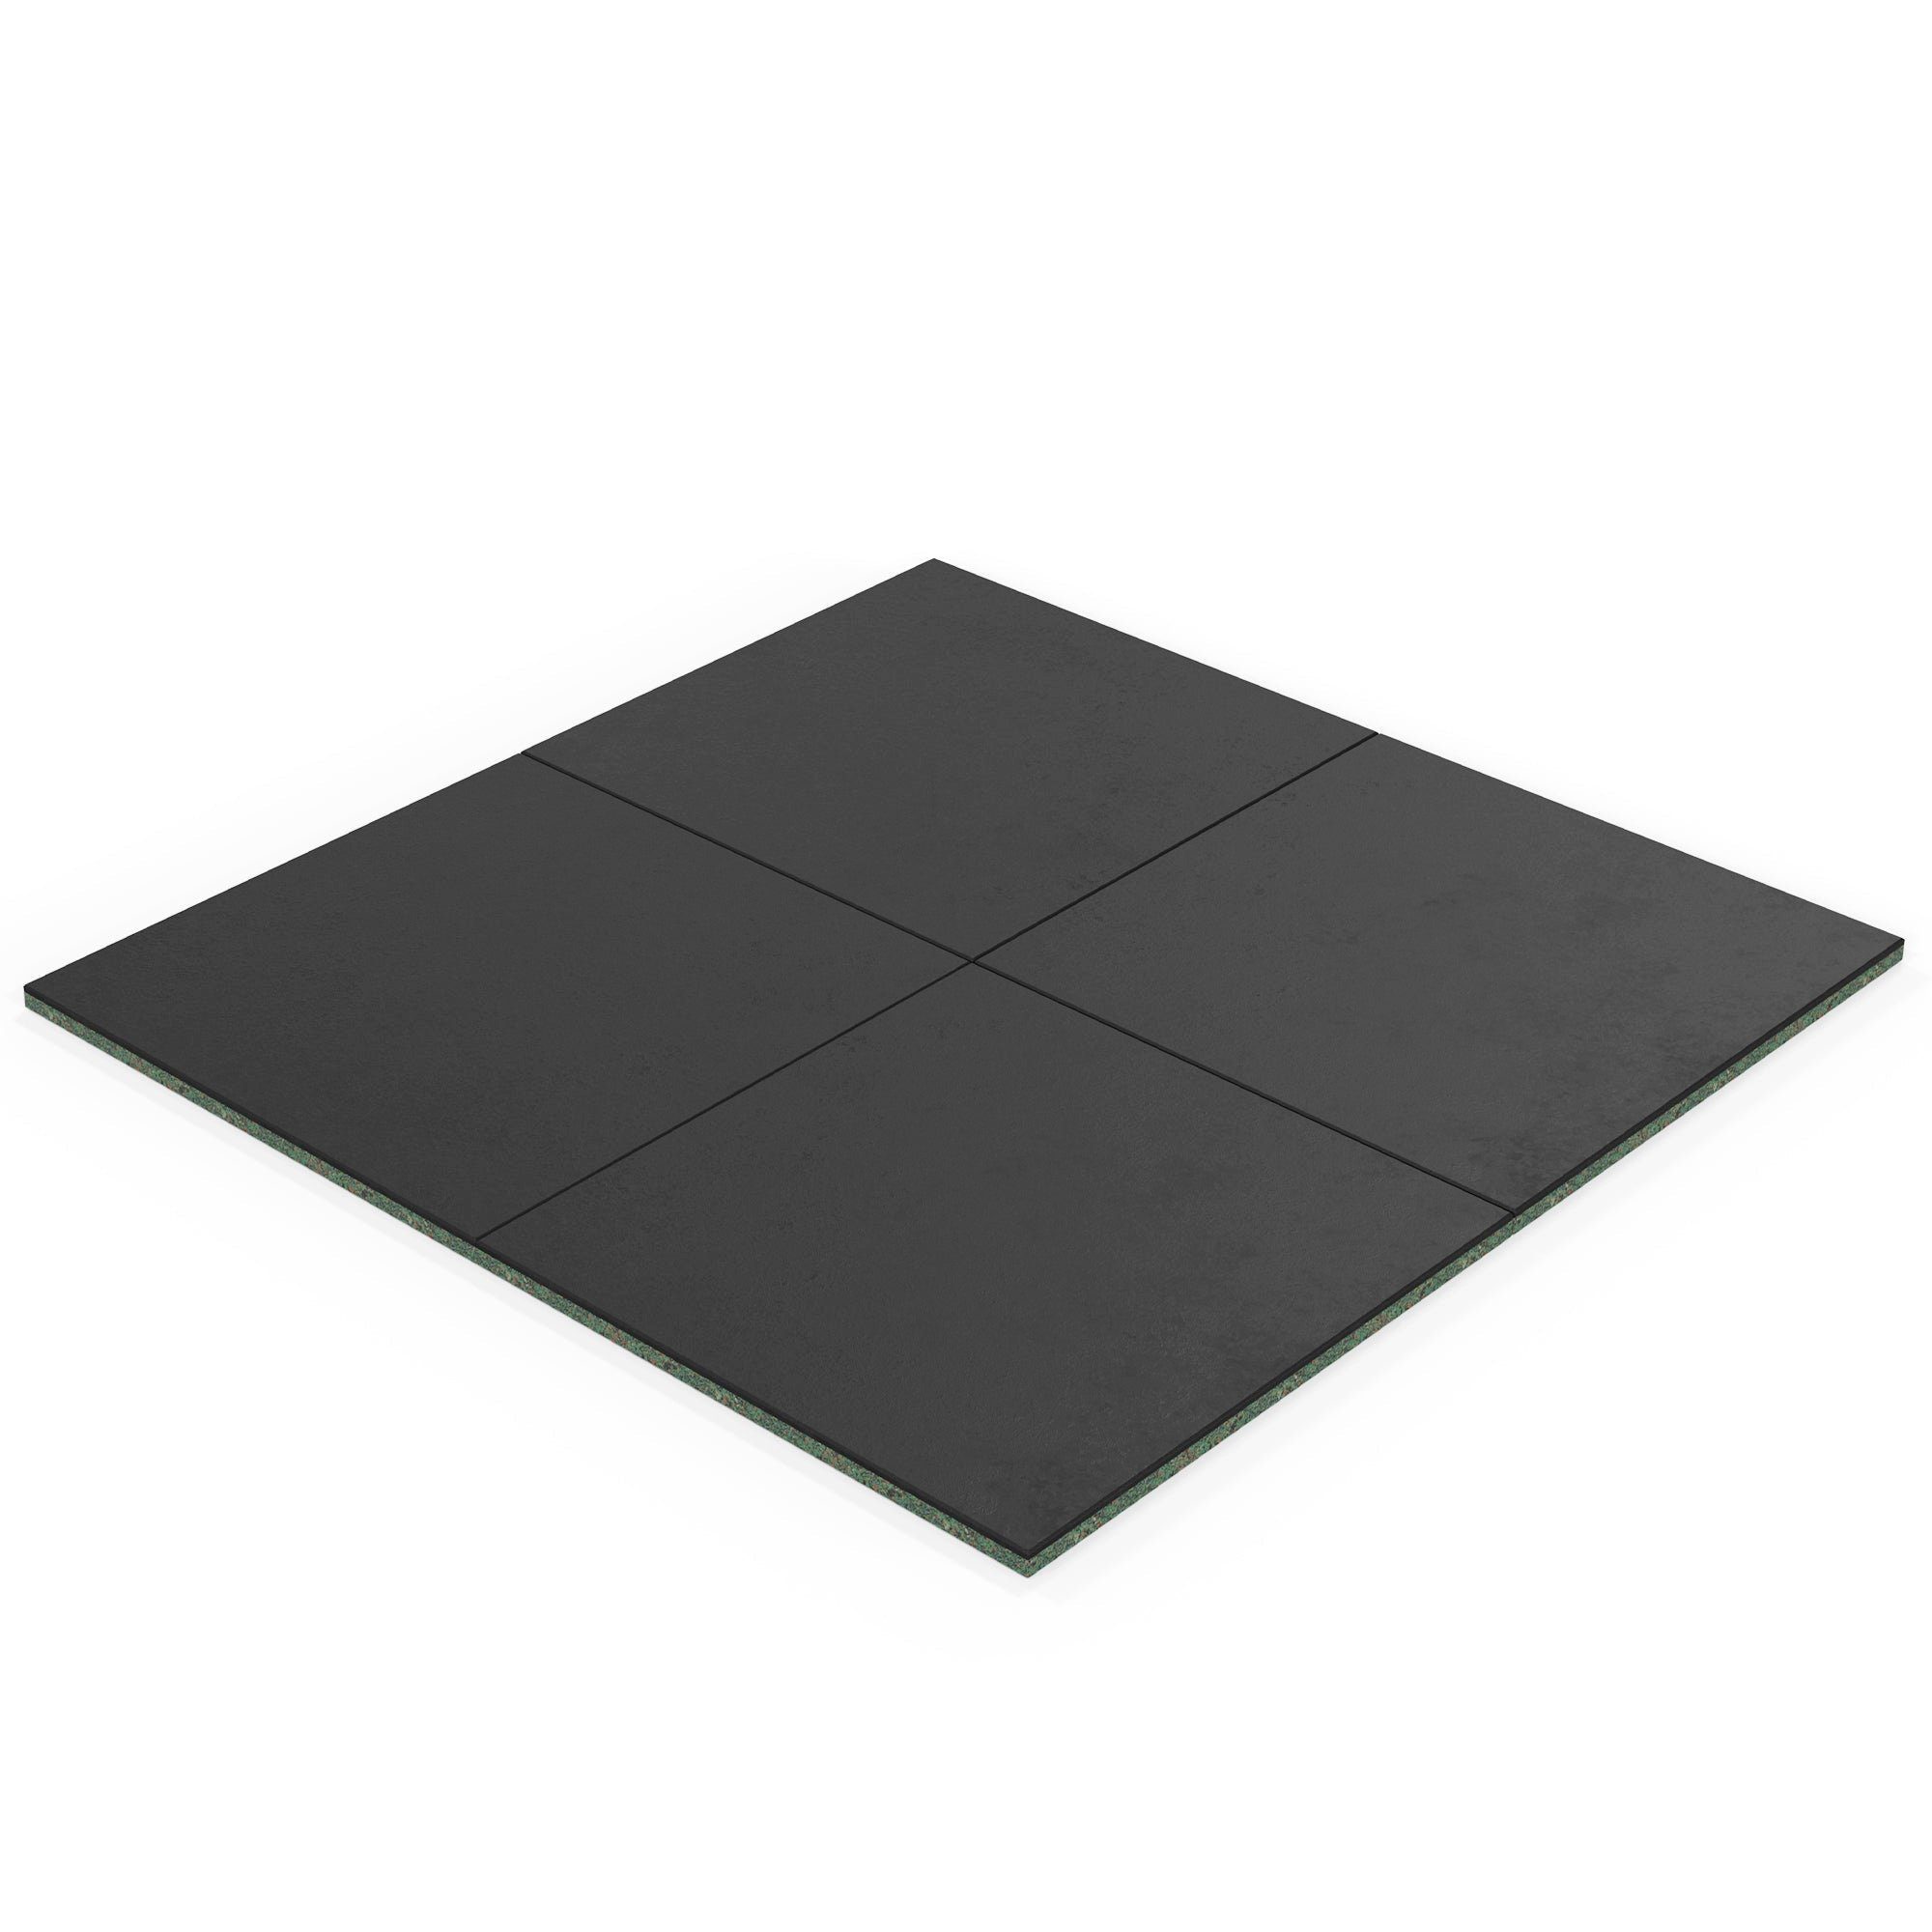 ATLETICA Bodenmatte, 14m2 SolidProtect Bodenschutzmatten 20 mm, Keltan EPDM Material